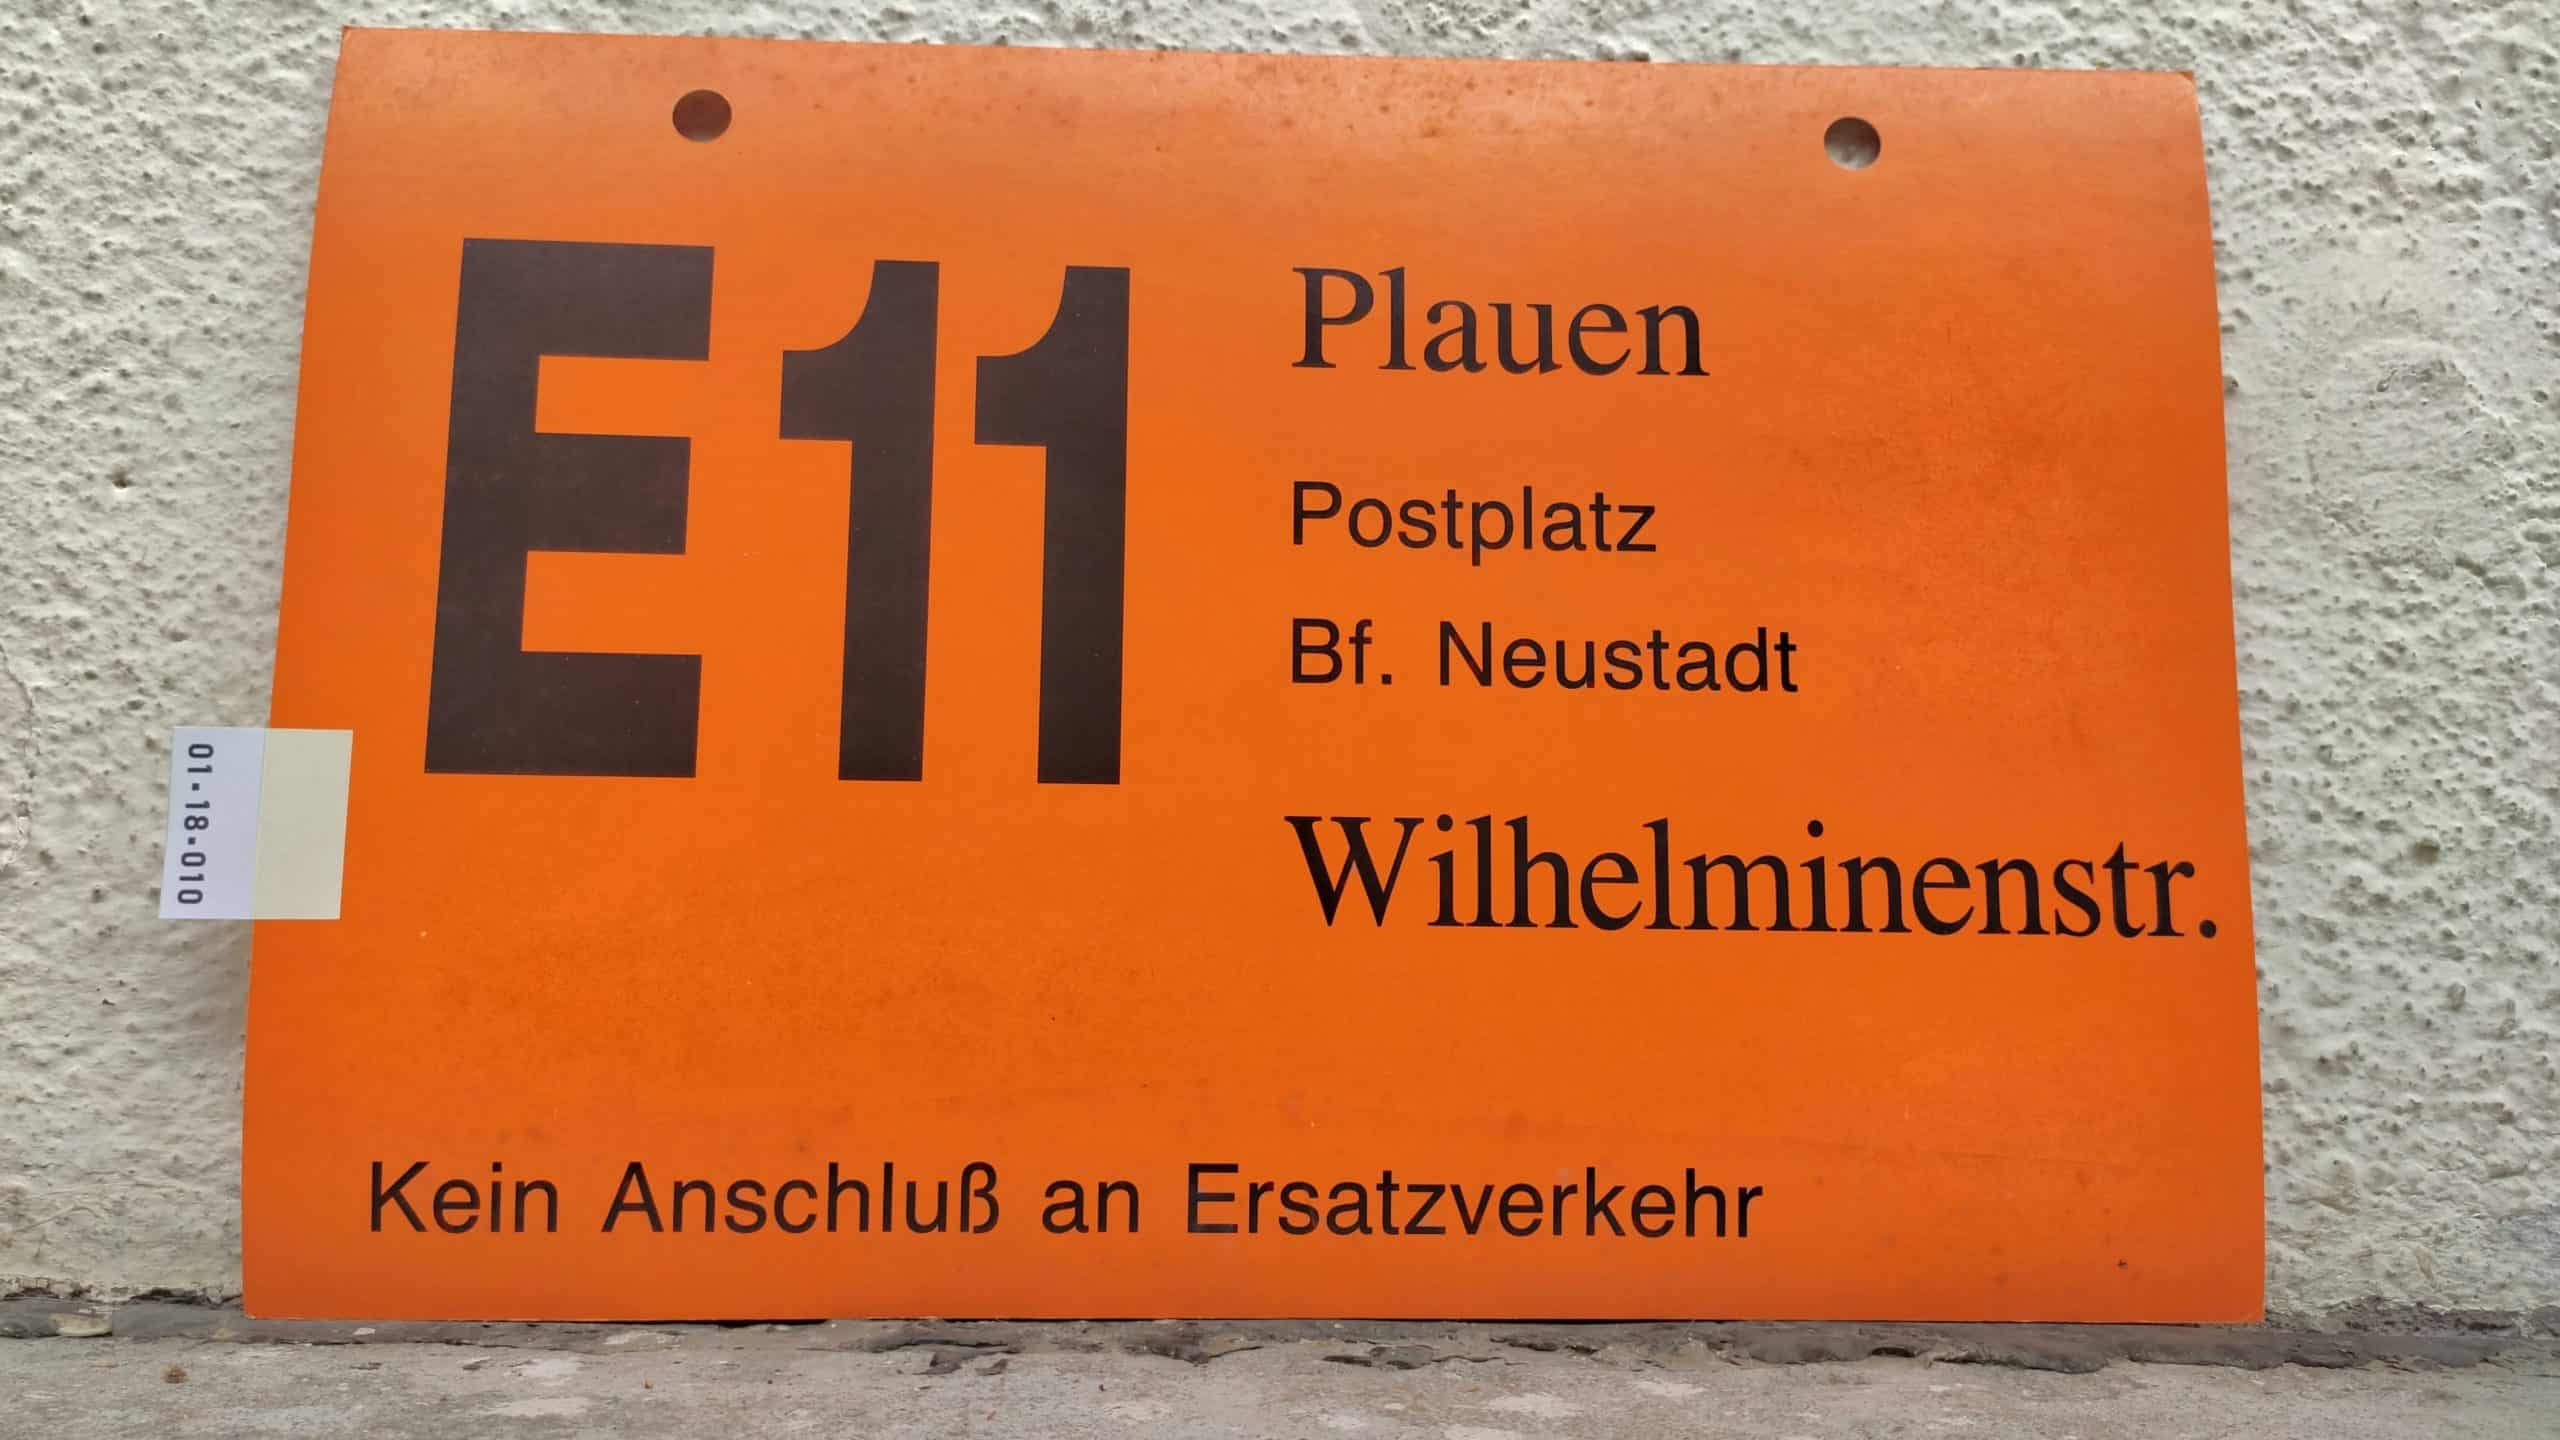 E11 Plauen – Wilhelminenstr.